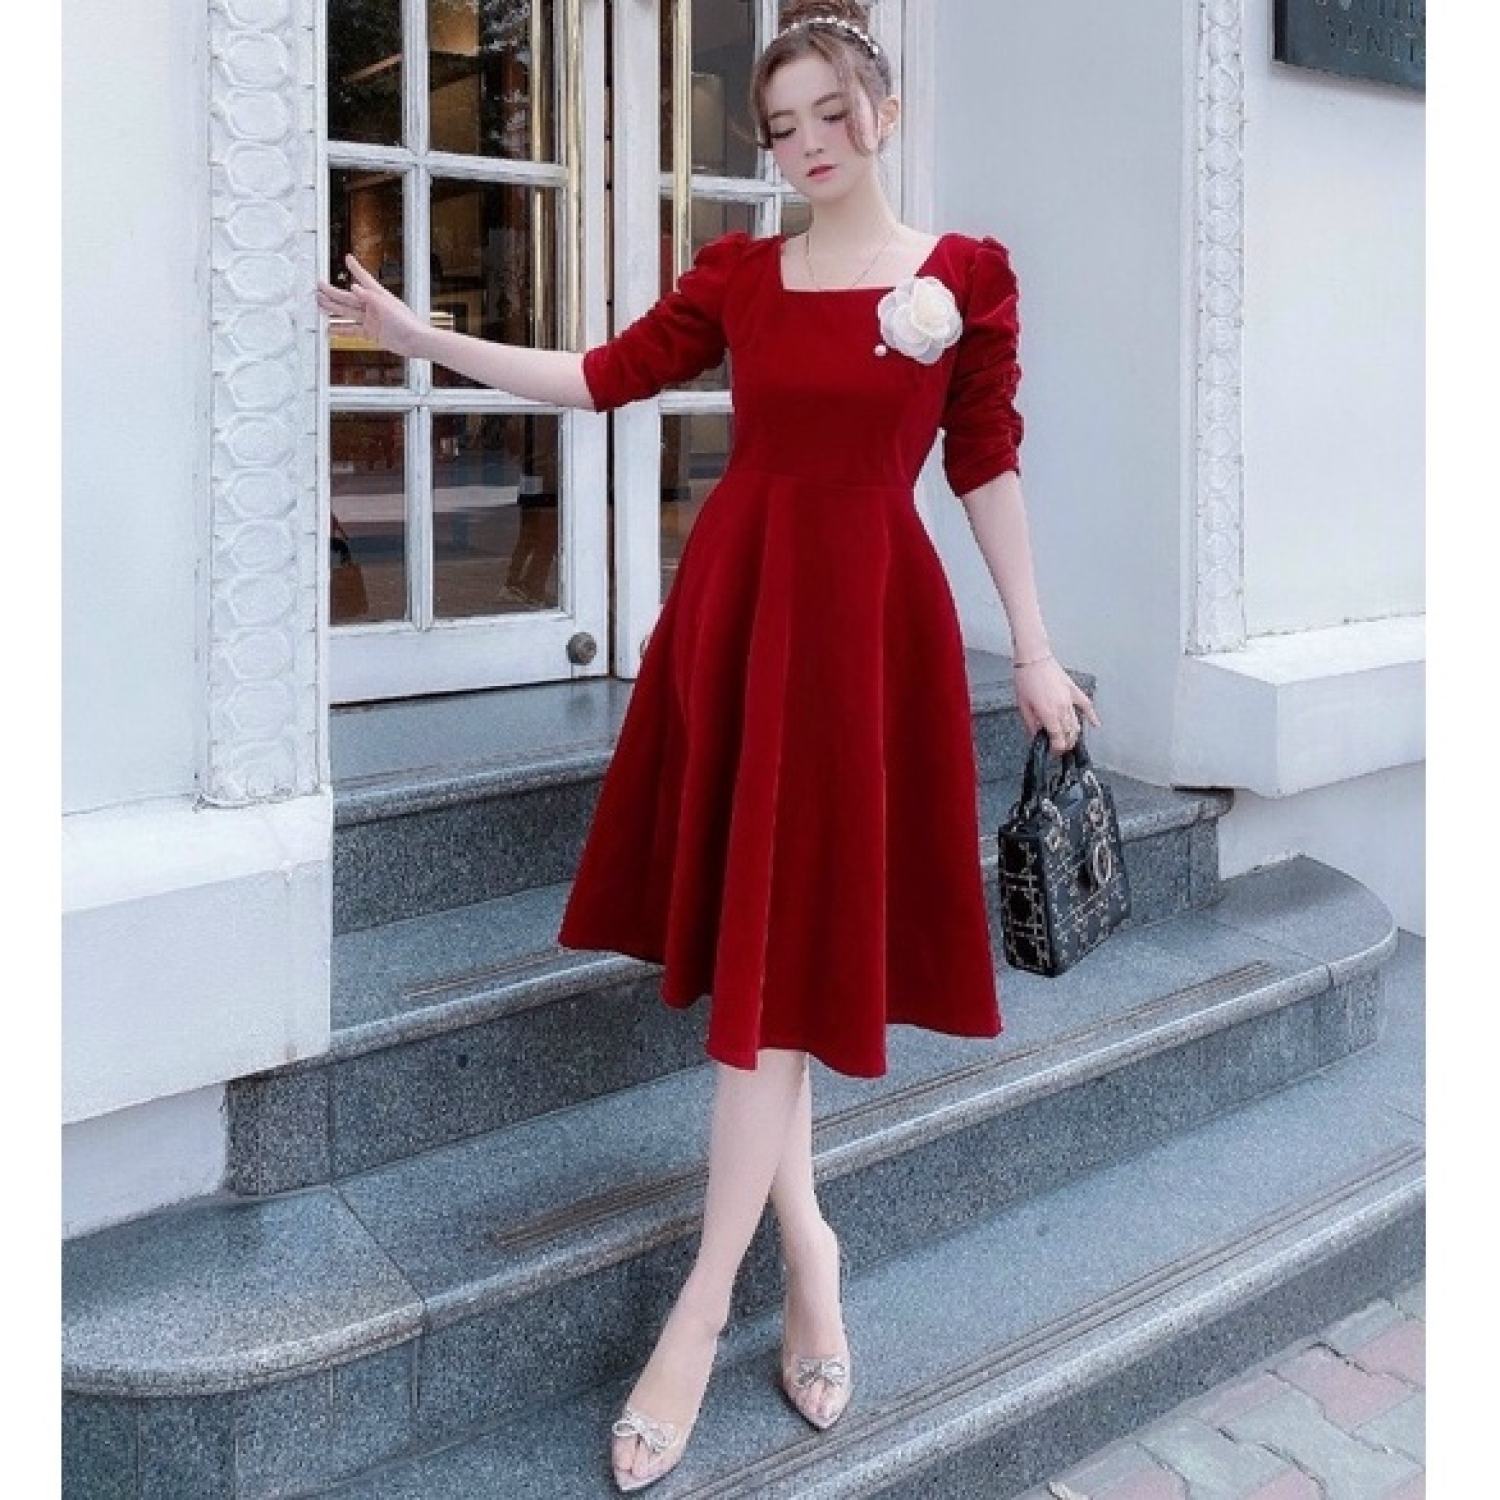 Gợi ý 8 mẫu váy đỏ đẹp cực phẩm, biến nàng trở thành tiêu điểm từ tiệc tất  niên cho tới buổi du xuân đầu năm